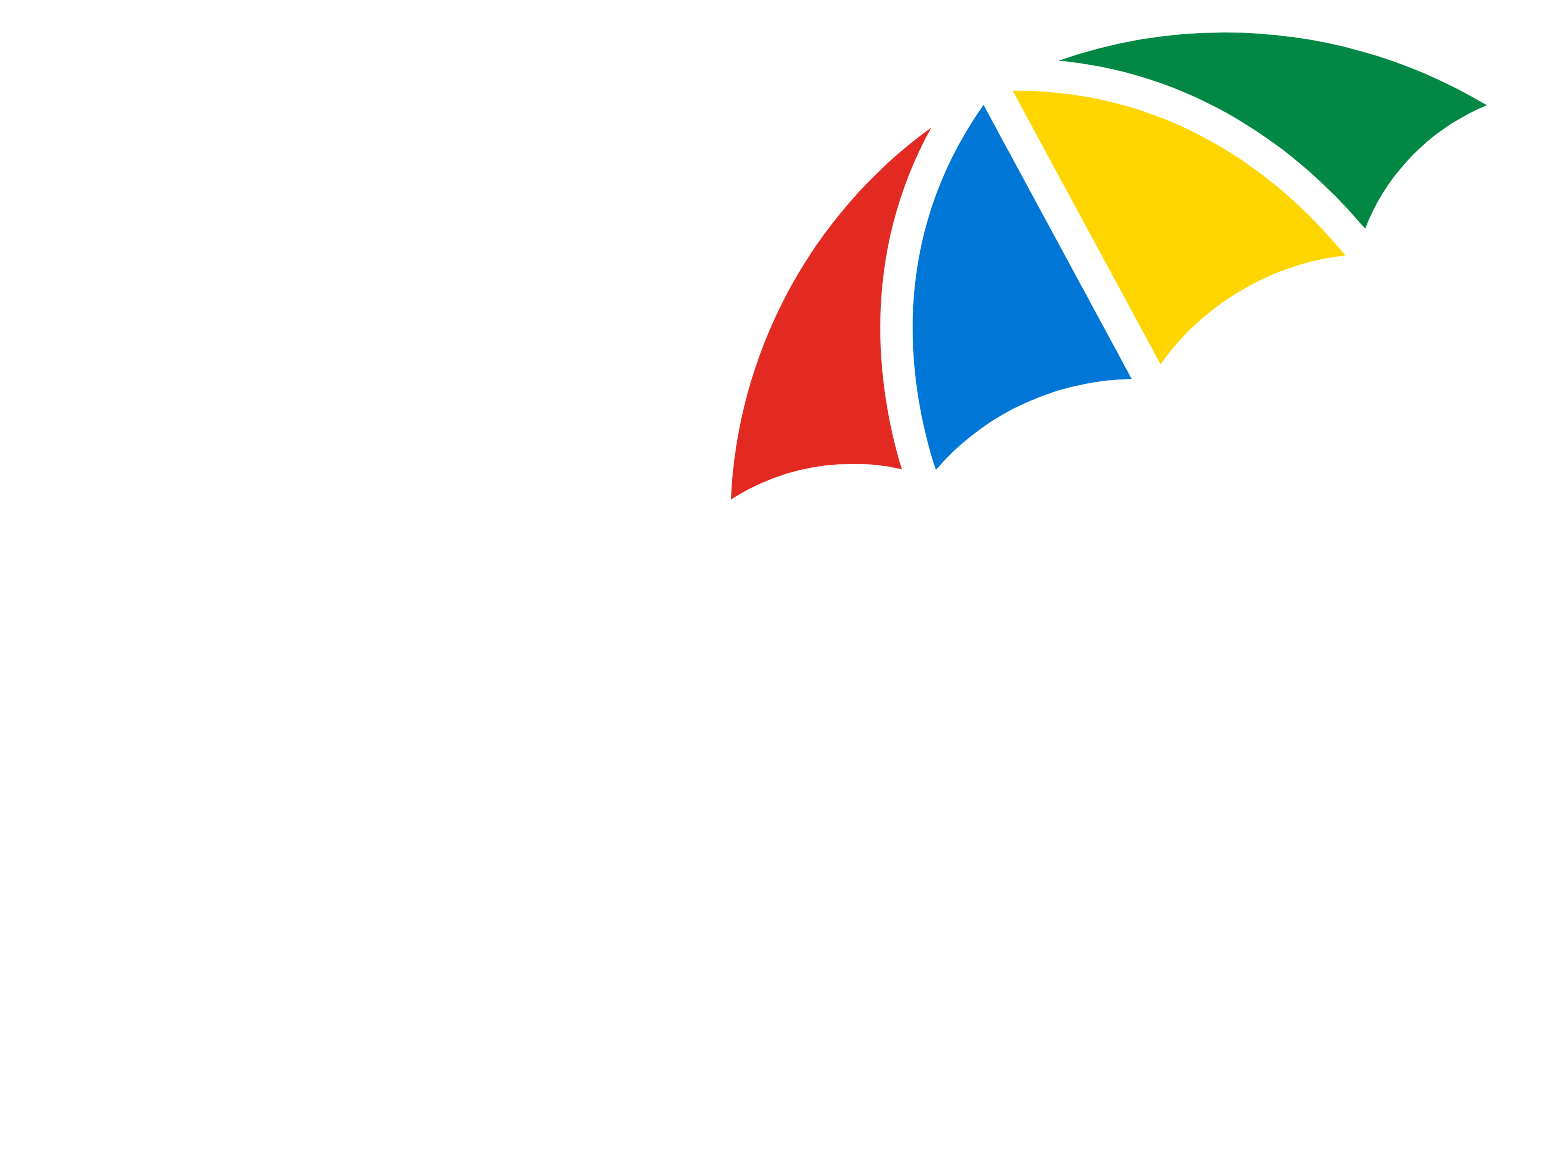 Legal & General logo large for dark backgrounds (transparent PNG)